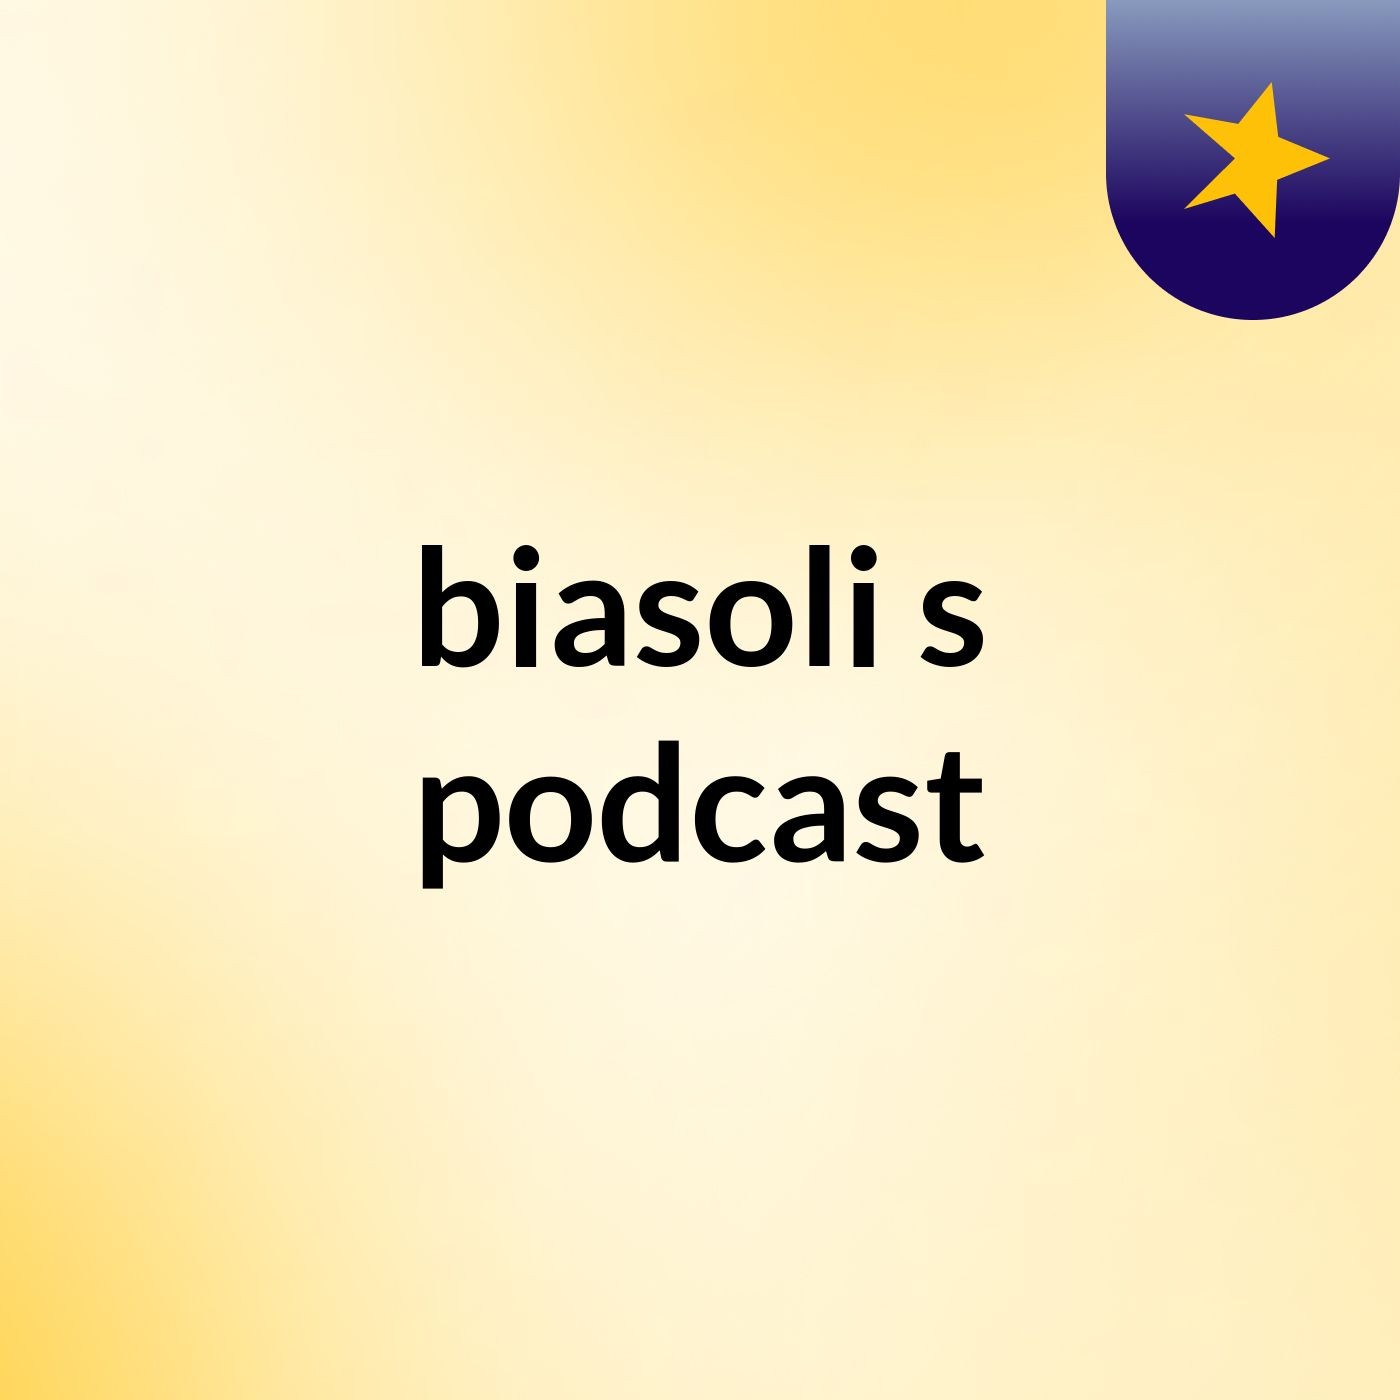 biasoli's podcast